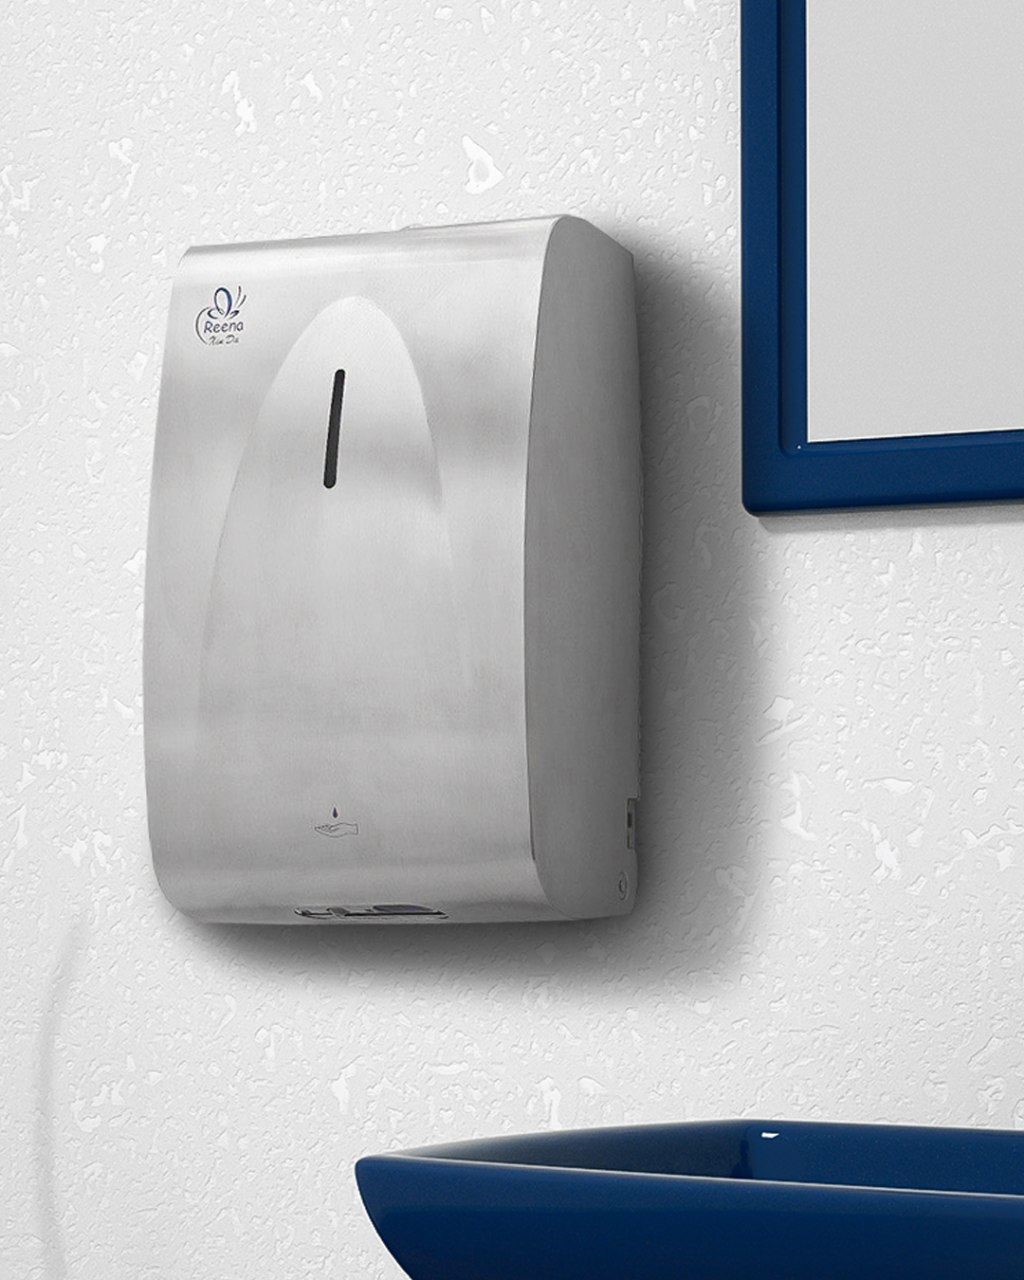 دست خشک کن برقی، دستگاهی برای کاهش اثرات زیست محیطی